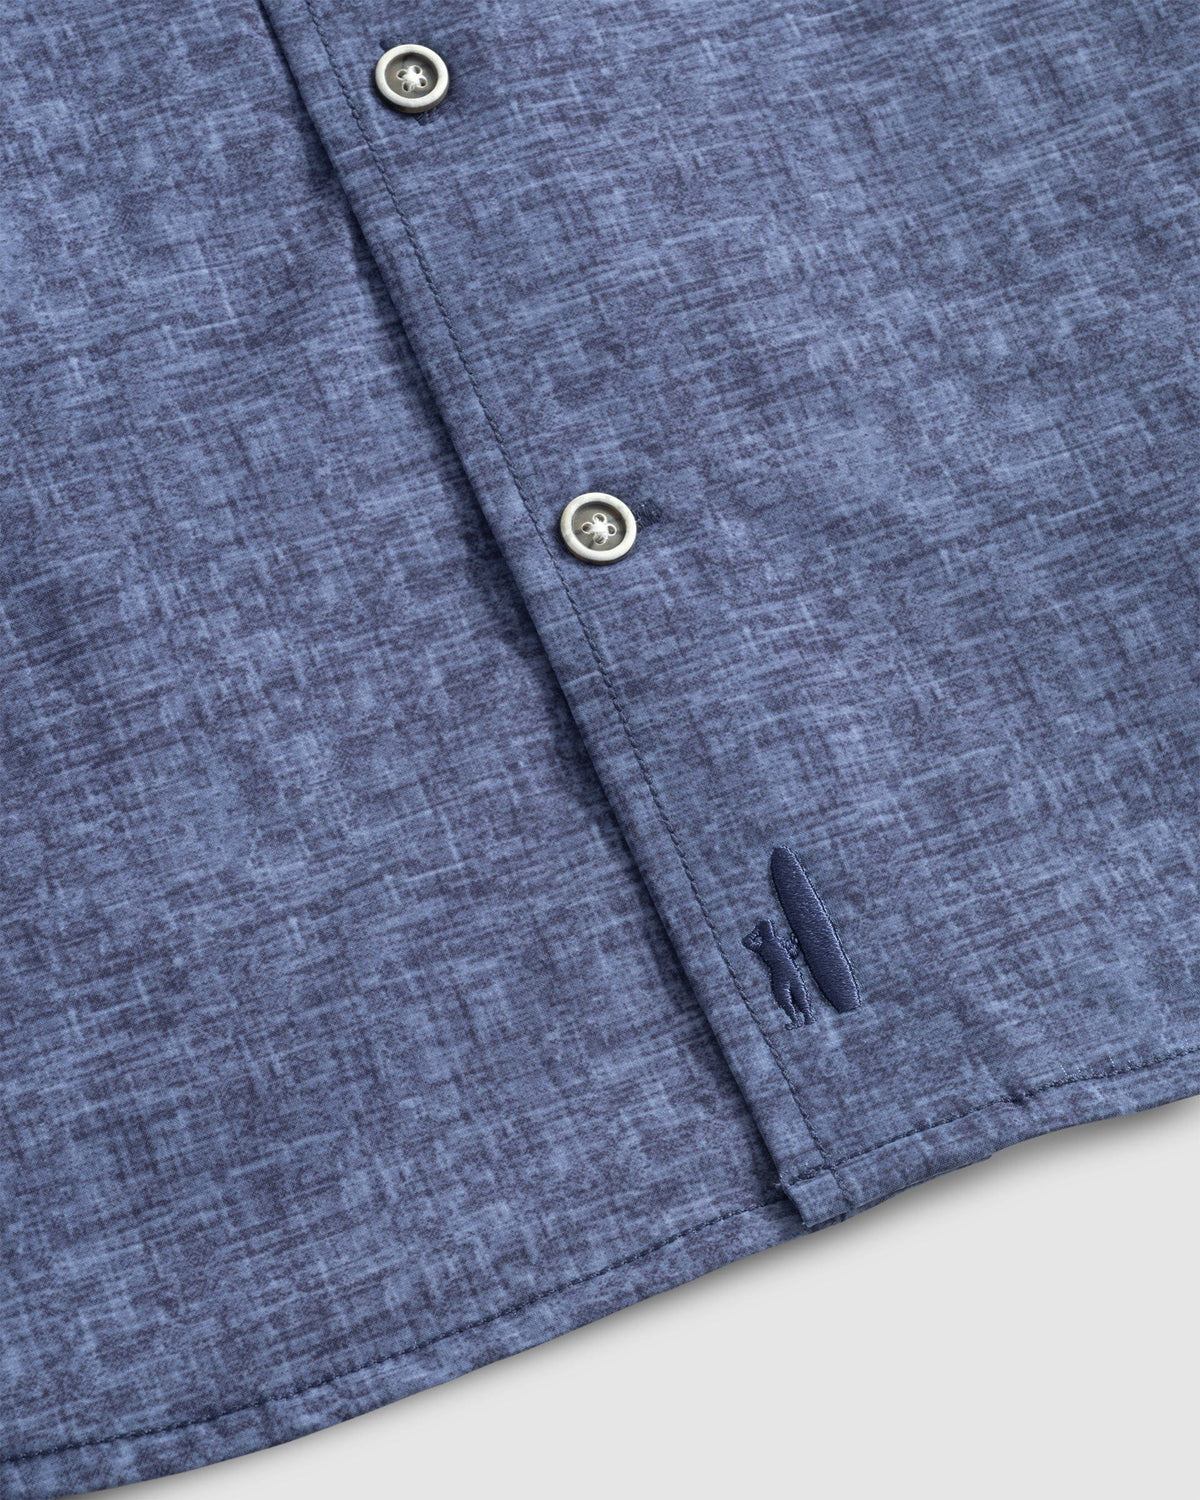 Johnnie-O Avin Jersey Knit Button Up Shirt